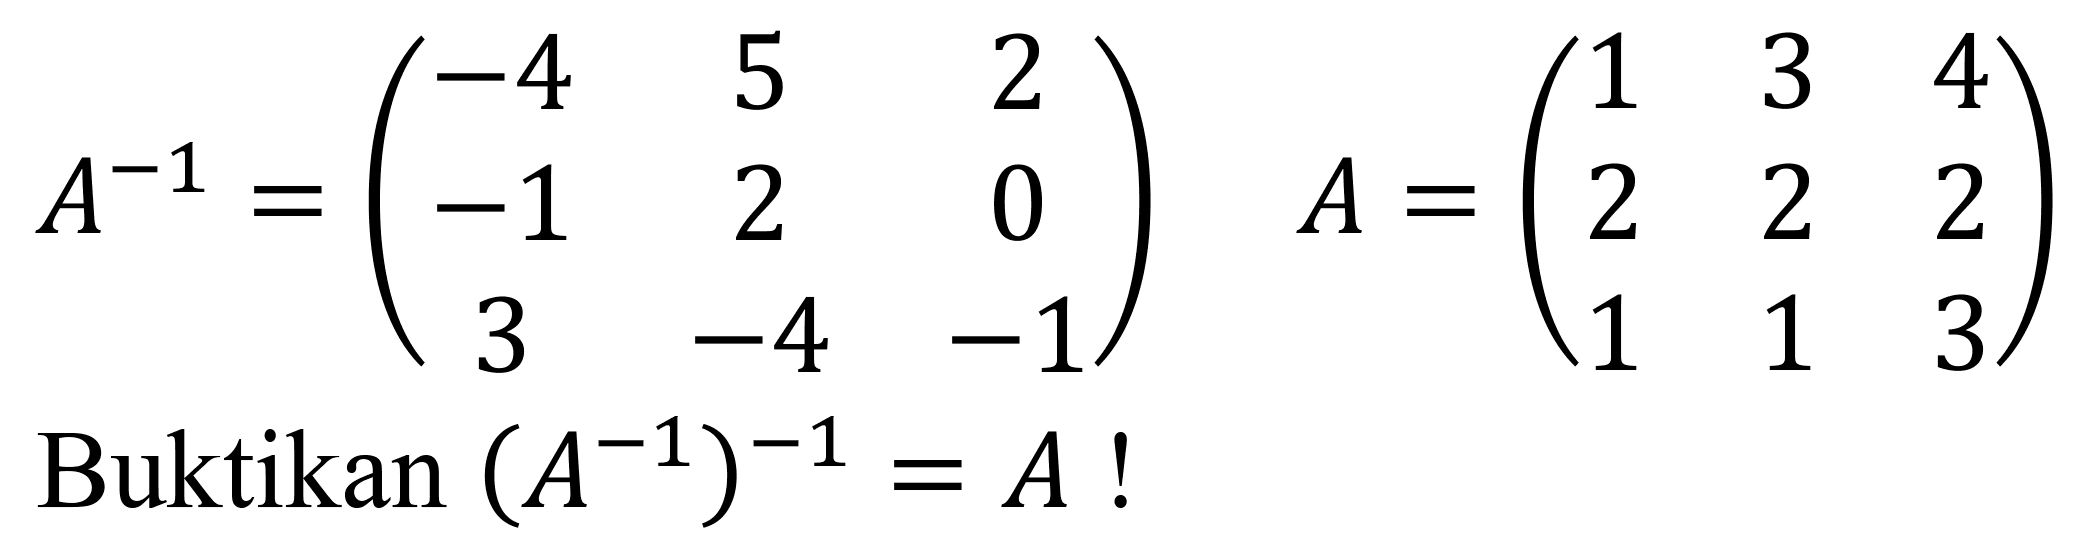 Suatu persamaan dapat ditulis sebagai  m^(4)+n^(4)=x . Apabila diketahui  m+n=1  dan  m^(2)+n^(2)=2 , maka nilai  x  yang dimaksud adalah...
A.  7 / 2 
D.  10 / 2 
B.  9 / 2 
E.  12 / 2 
C.  11 / 2 